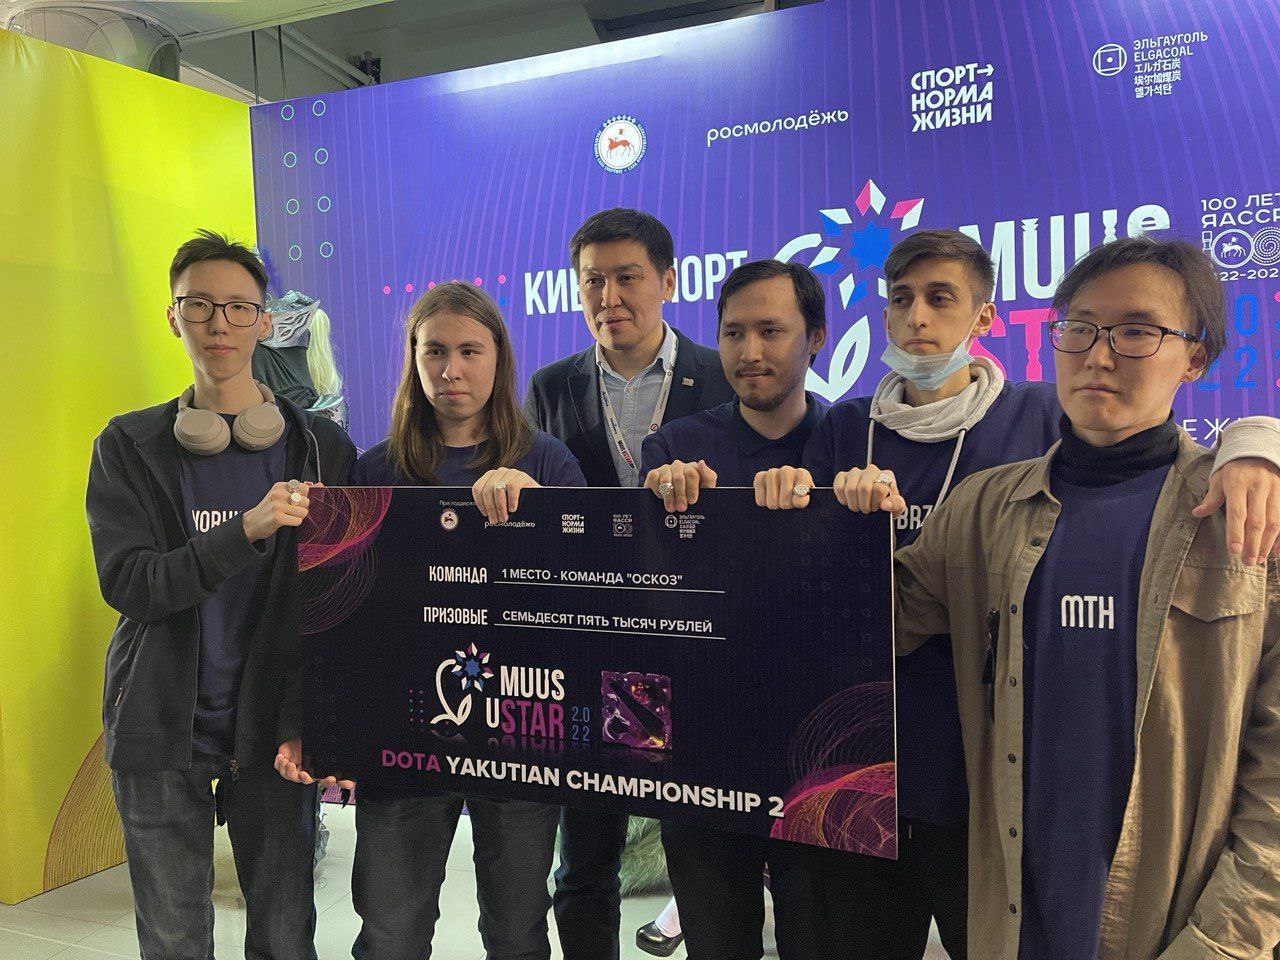 Победители турнира Dota 2: Yakutian Championship получили 75 тыс рублей